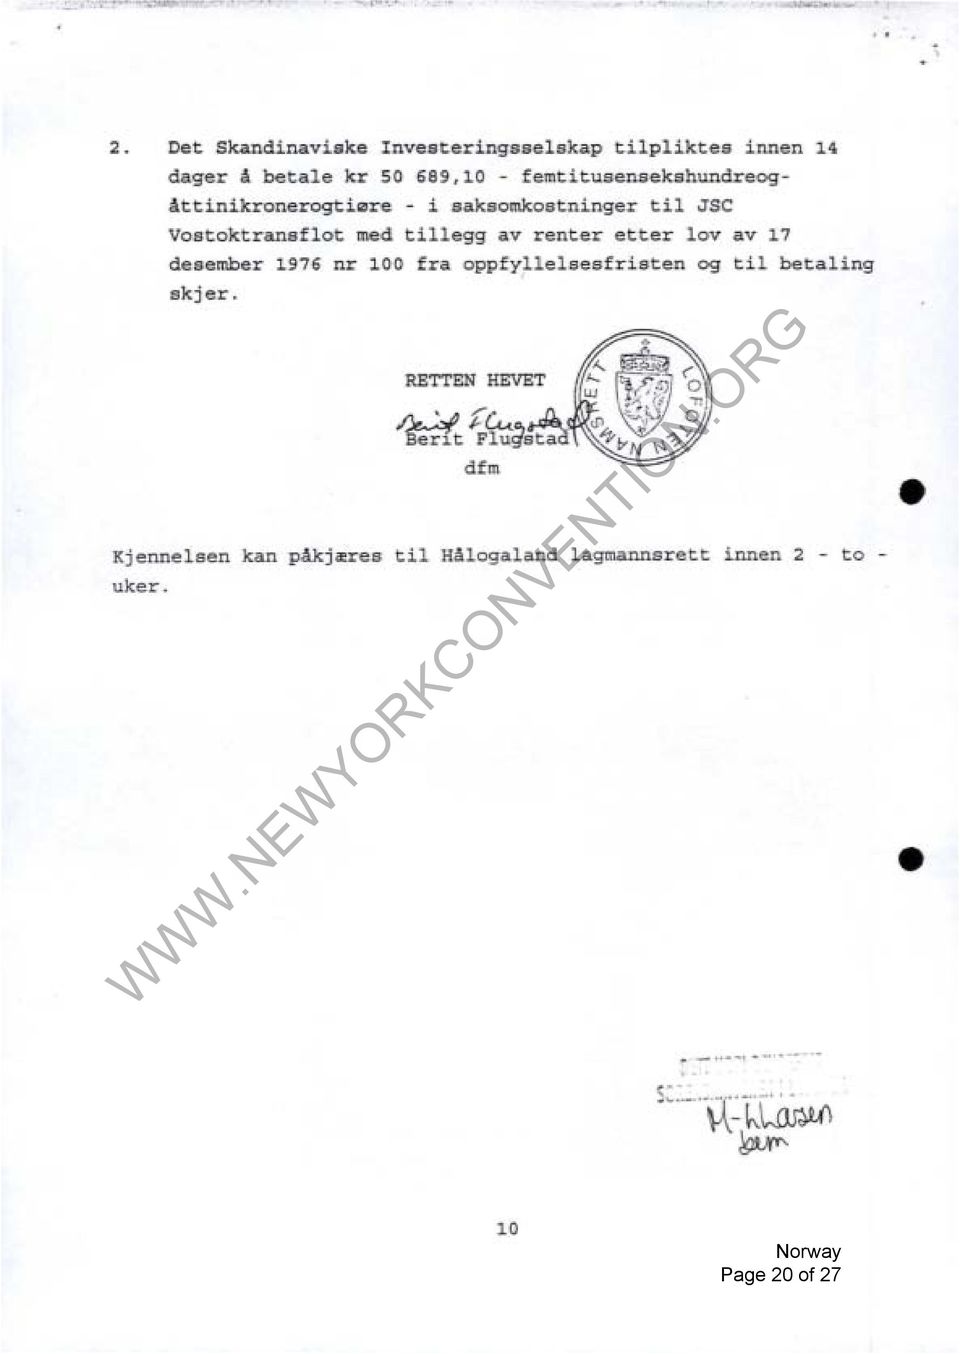 Attinikronerogti0re - i saksomkostninger til JSC Vostoktransflot med tillegg av renter etter lov av 17 desember 1976 nr 100